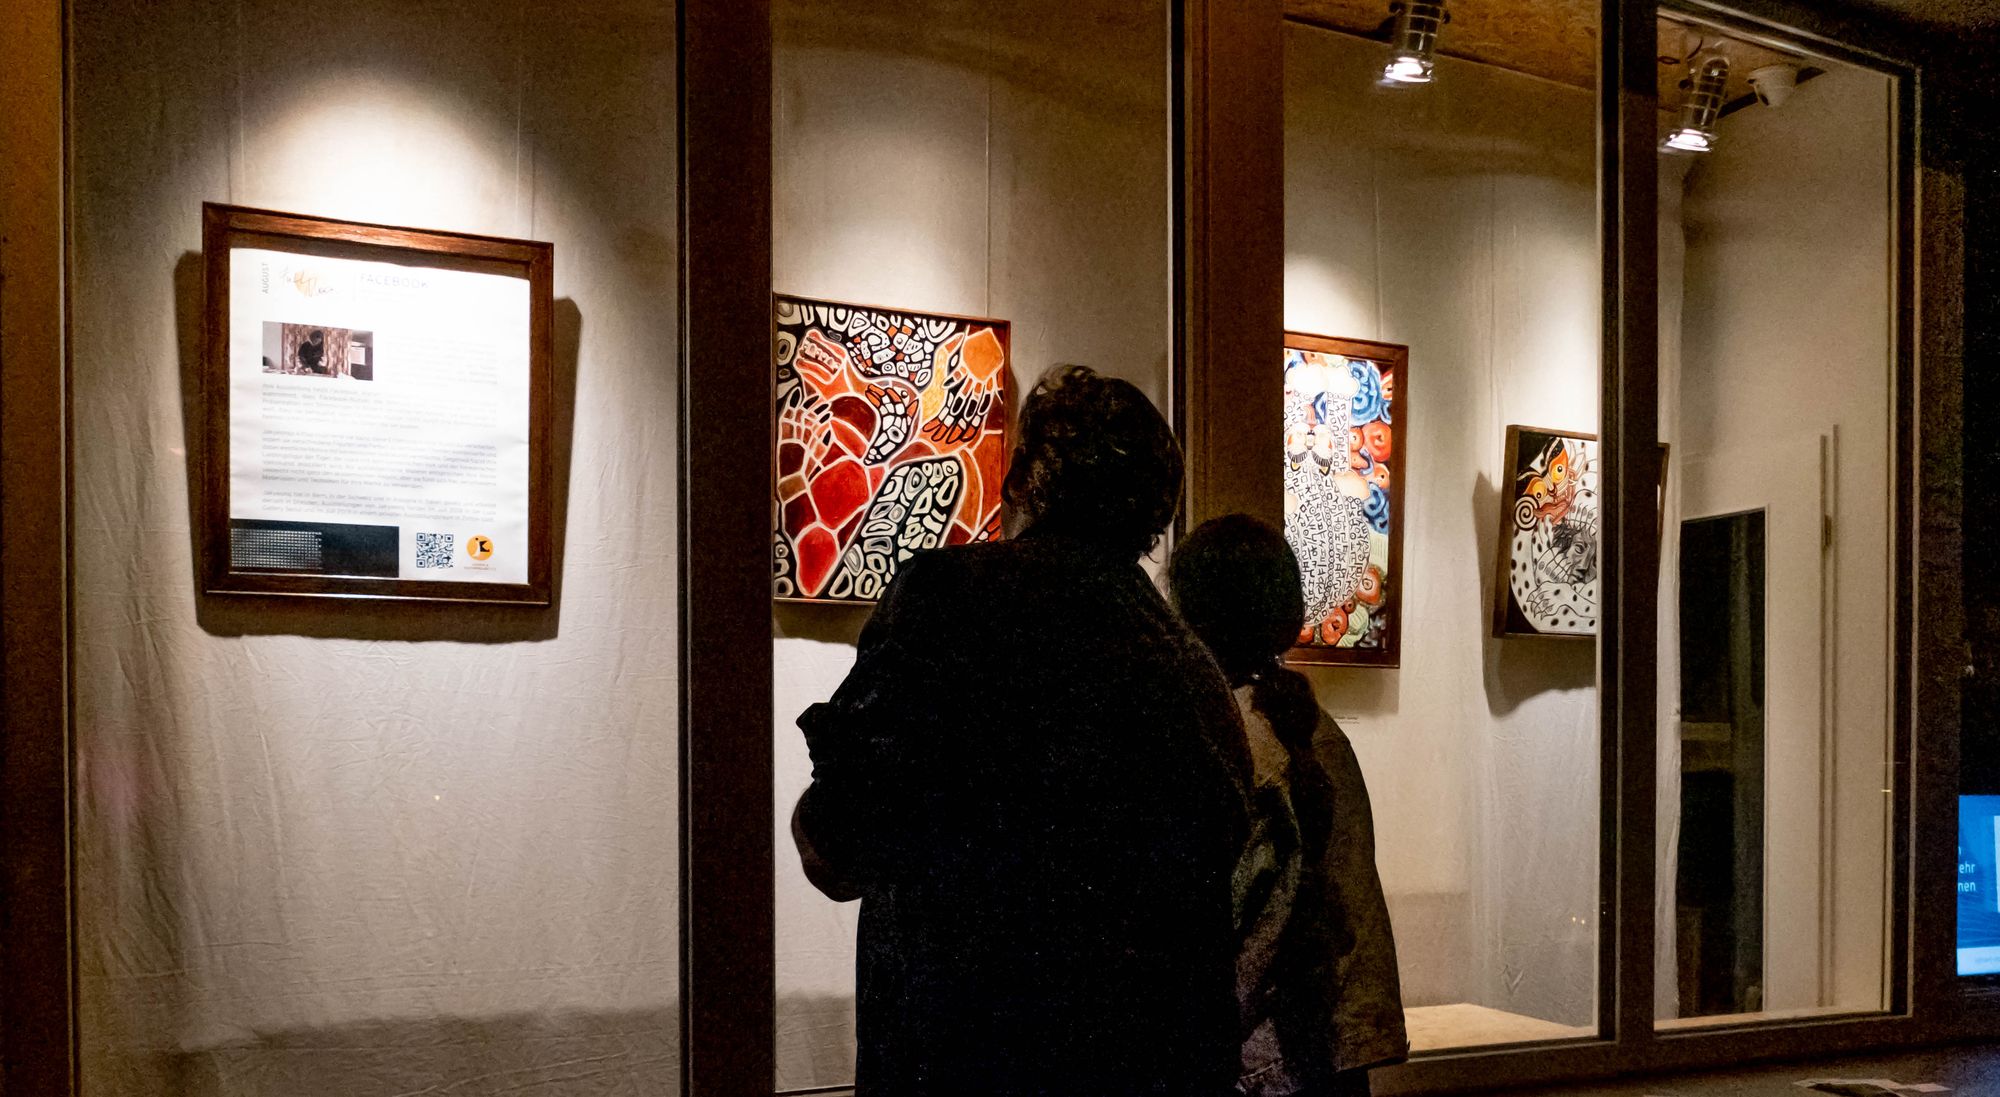 Gäste betrachten die Bilder der Künstlerin Jakyeong an der Hechtstraße.